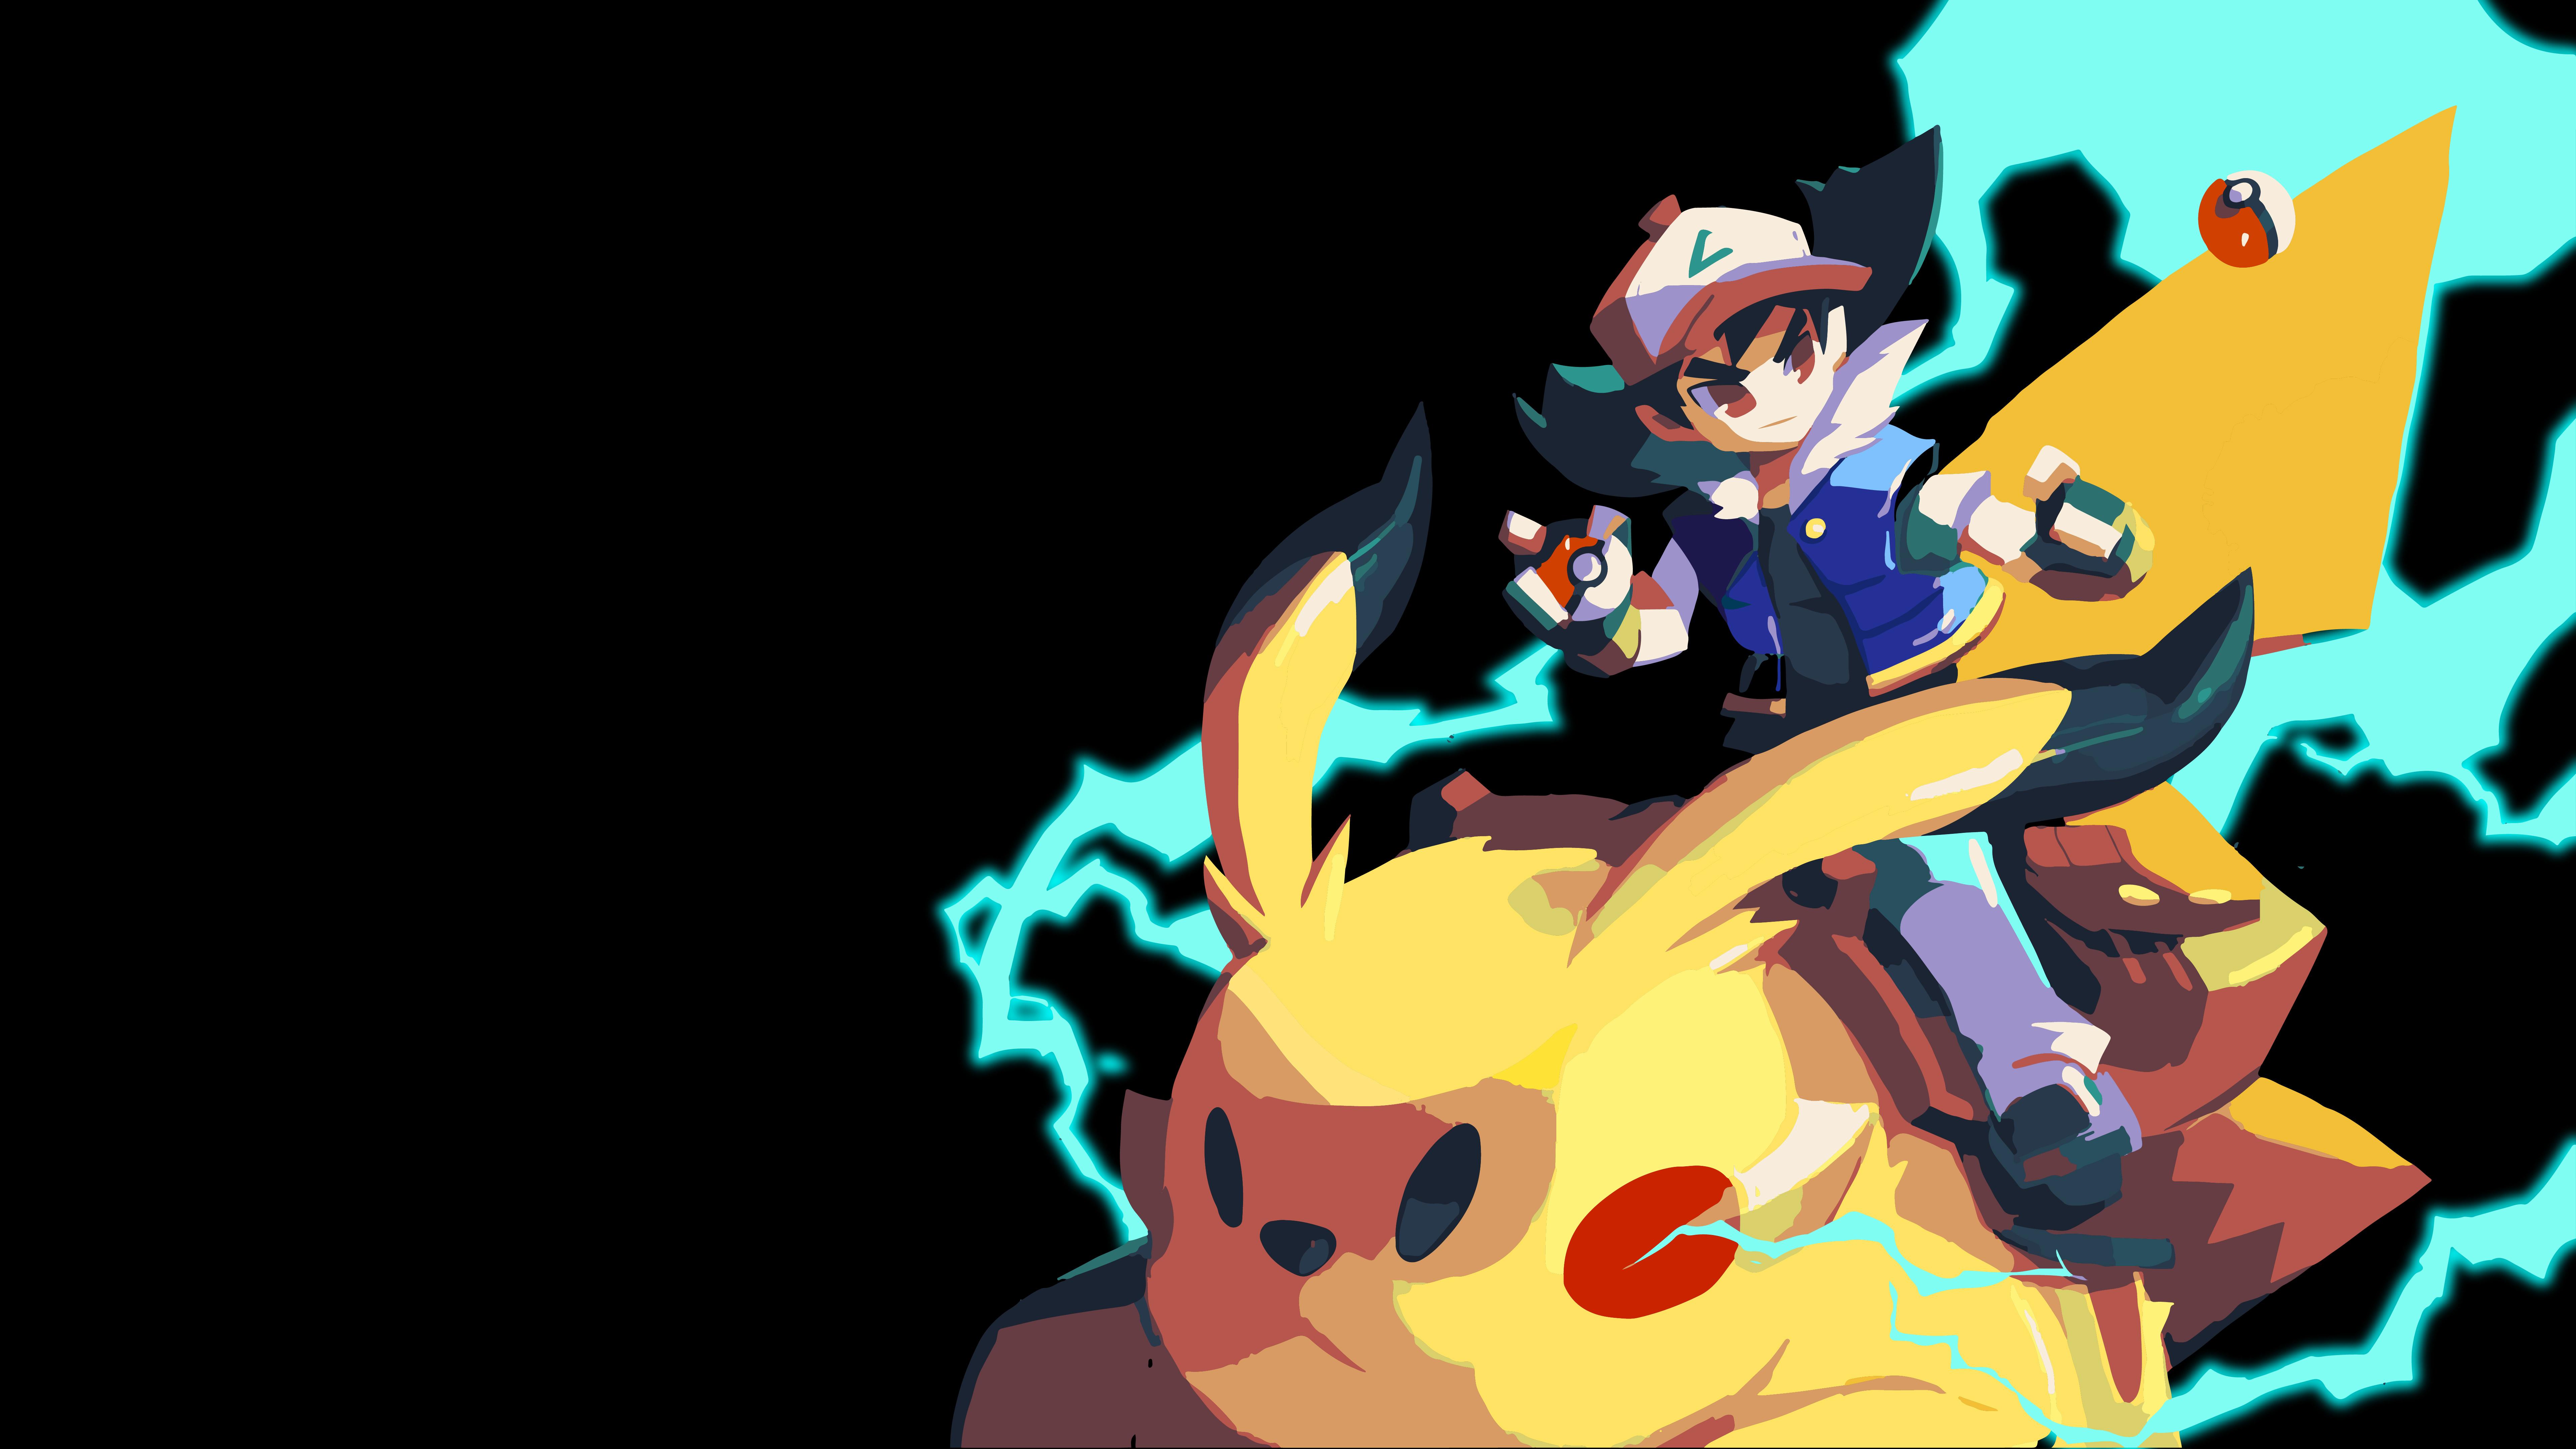 7680 x 4320 · jpeg - Pokemon 8k Ultra HD Wallpaper | Background Image | 7680x4320